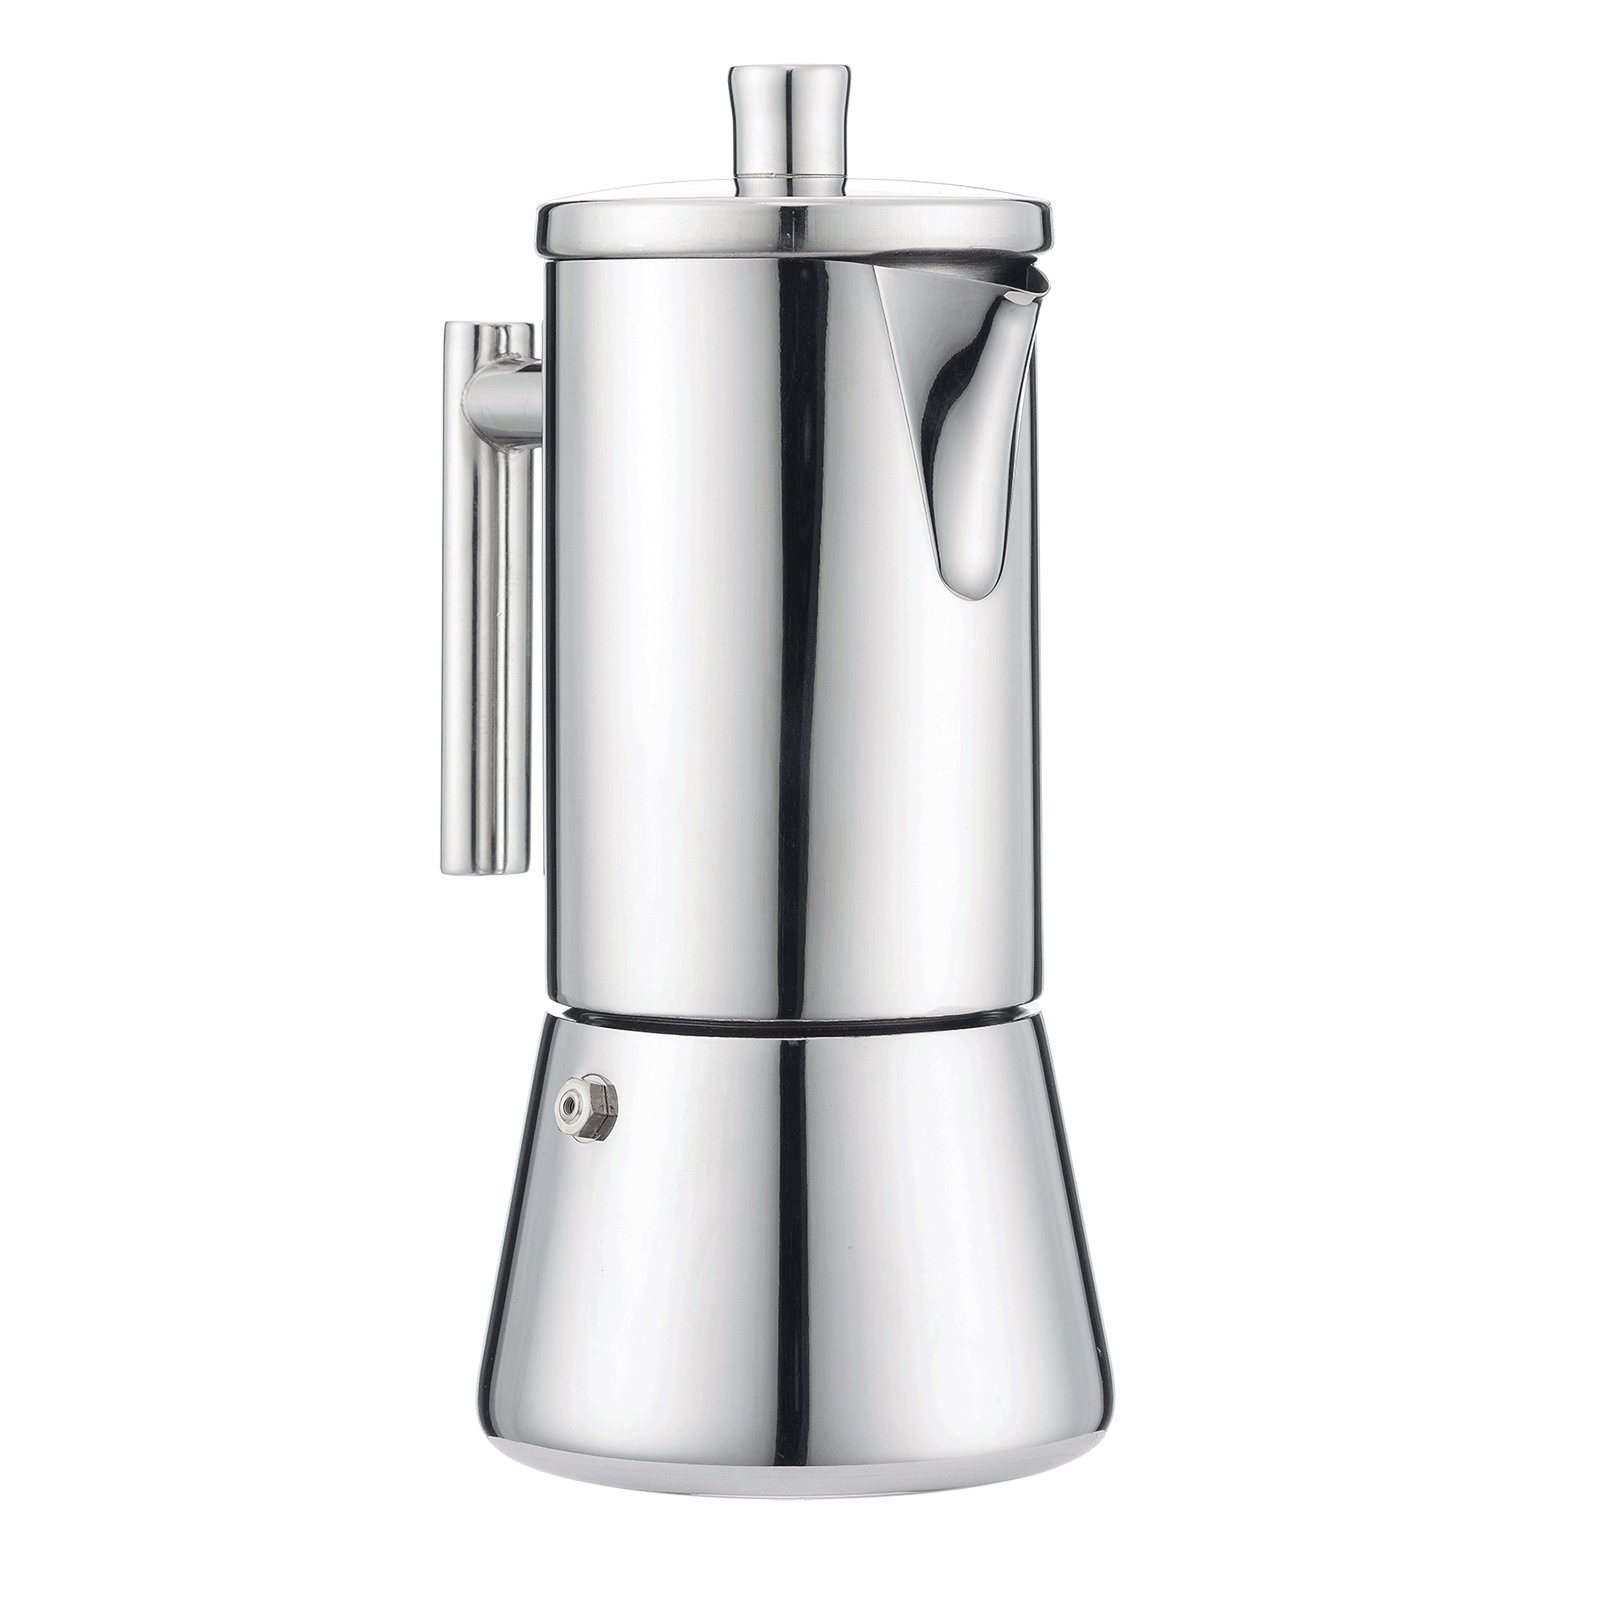 1pc 304 Stainless Steel Moka Pot Espresso Coffee Pot Espresso Coffee Maker (Silver), Size: 11.5x11x18.5cm